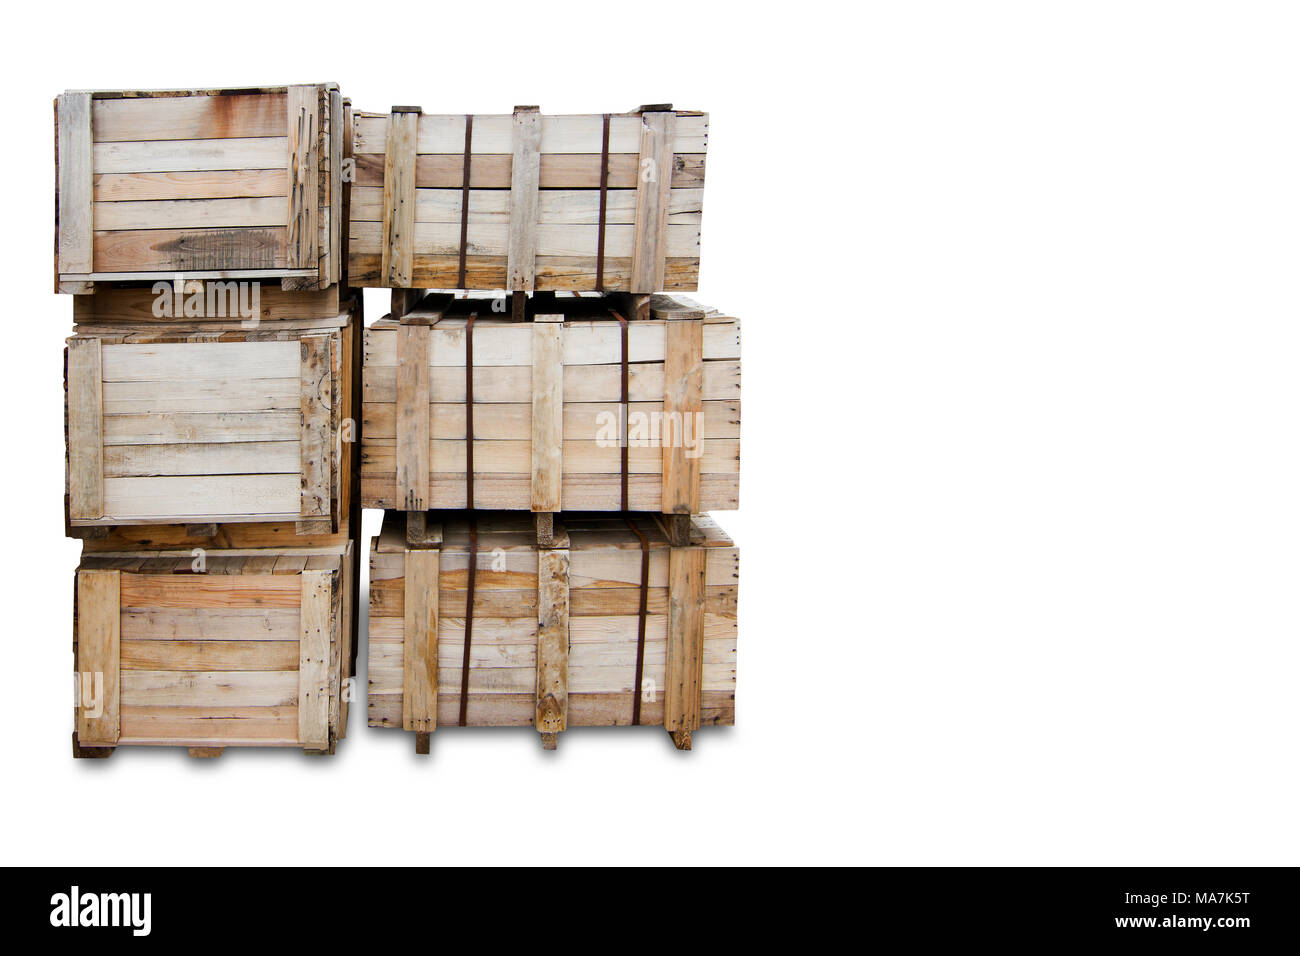 Holz Paletten - Kisten für den Transport - Starke cargo Security isoliert - weißer Hintergrund - Kopie Raum Stockfoto